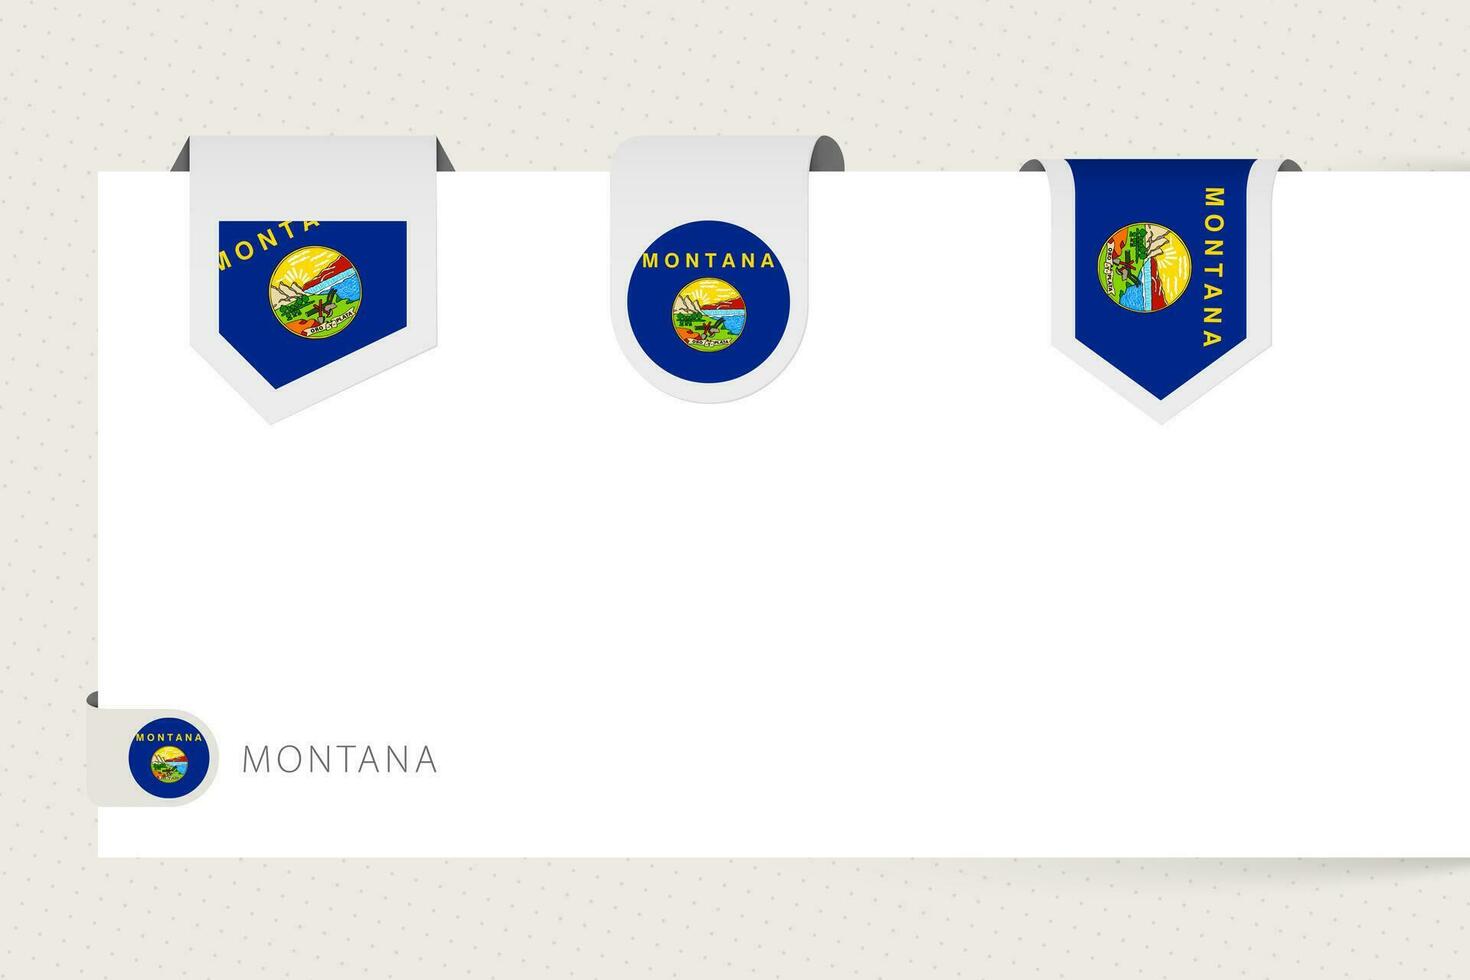 etiket vlag verzameling van ons staat Montana in verschillend vorm geven aan. lint vlag sjabloon van Montana vector